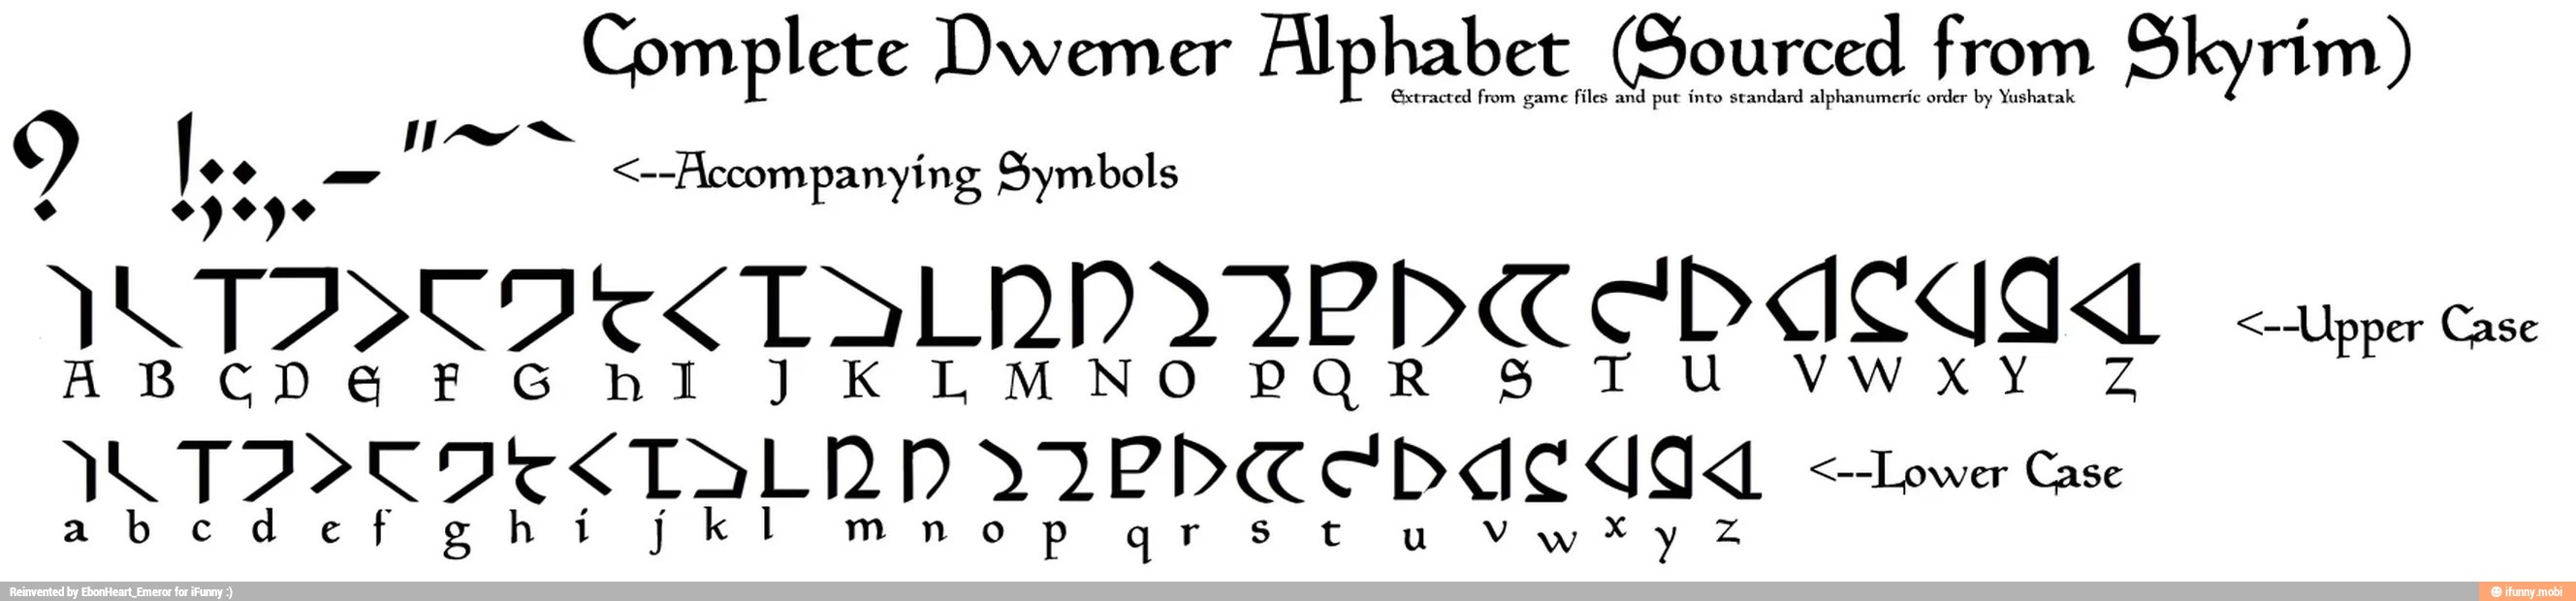 Двемерский алфавит